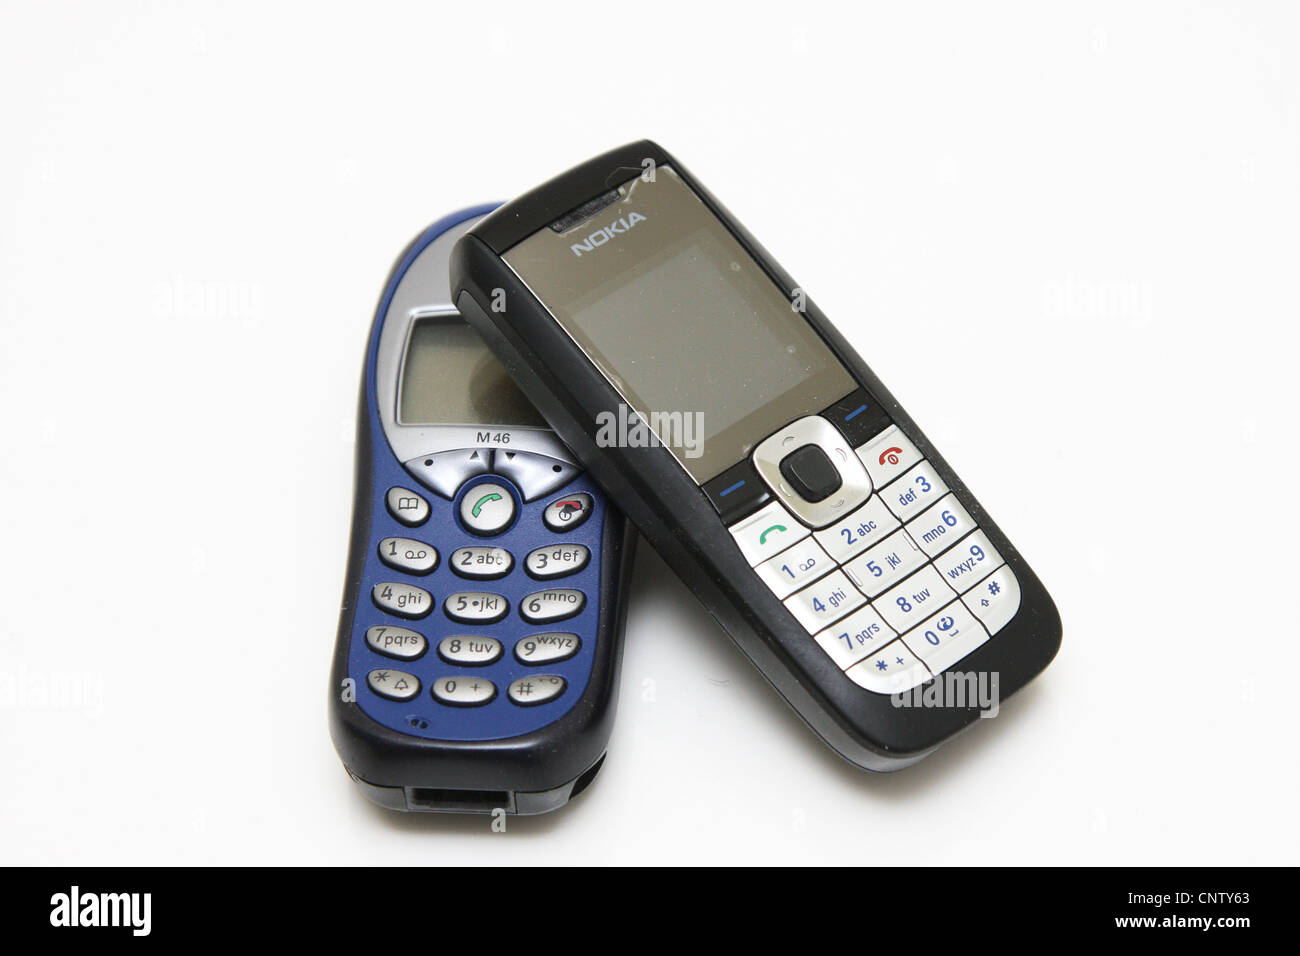 Teléfono móvil Nokia Siemens Foto de stock